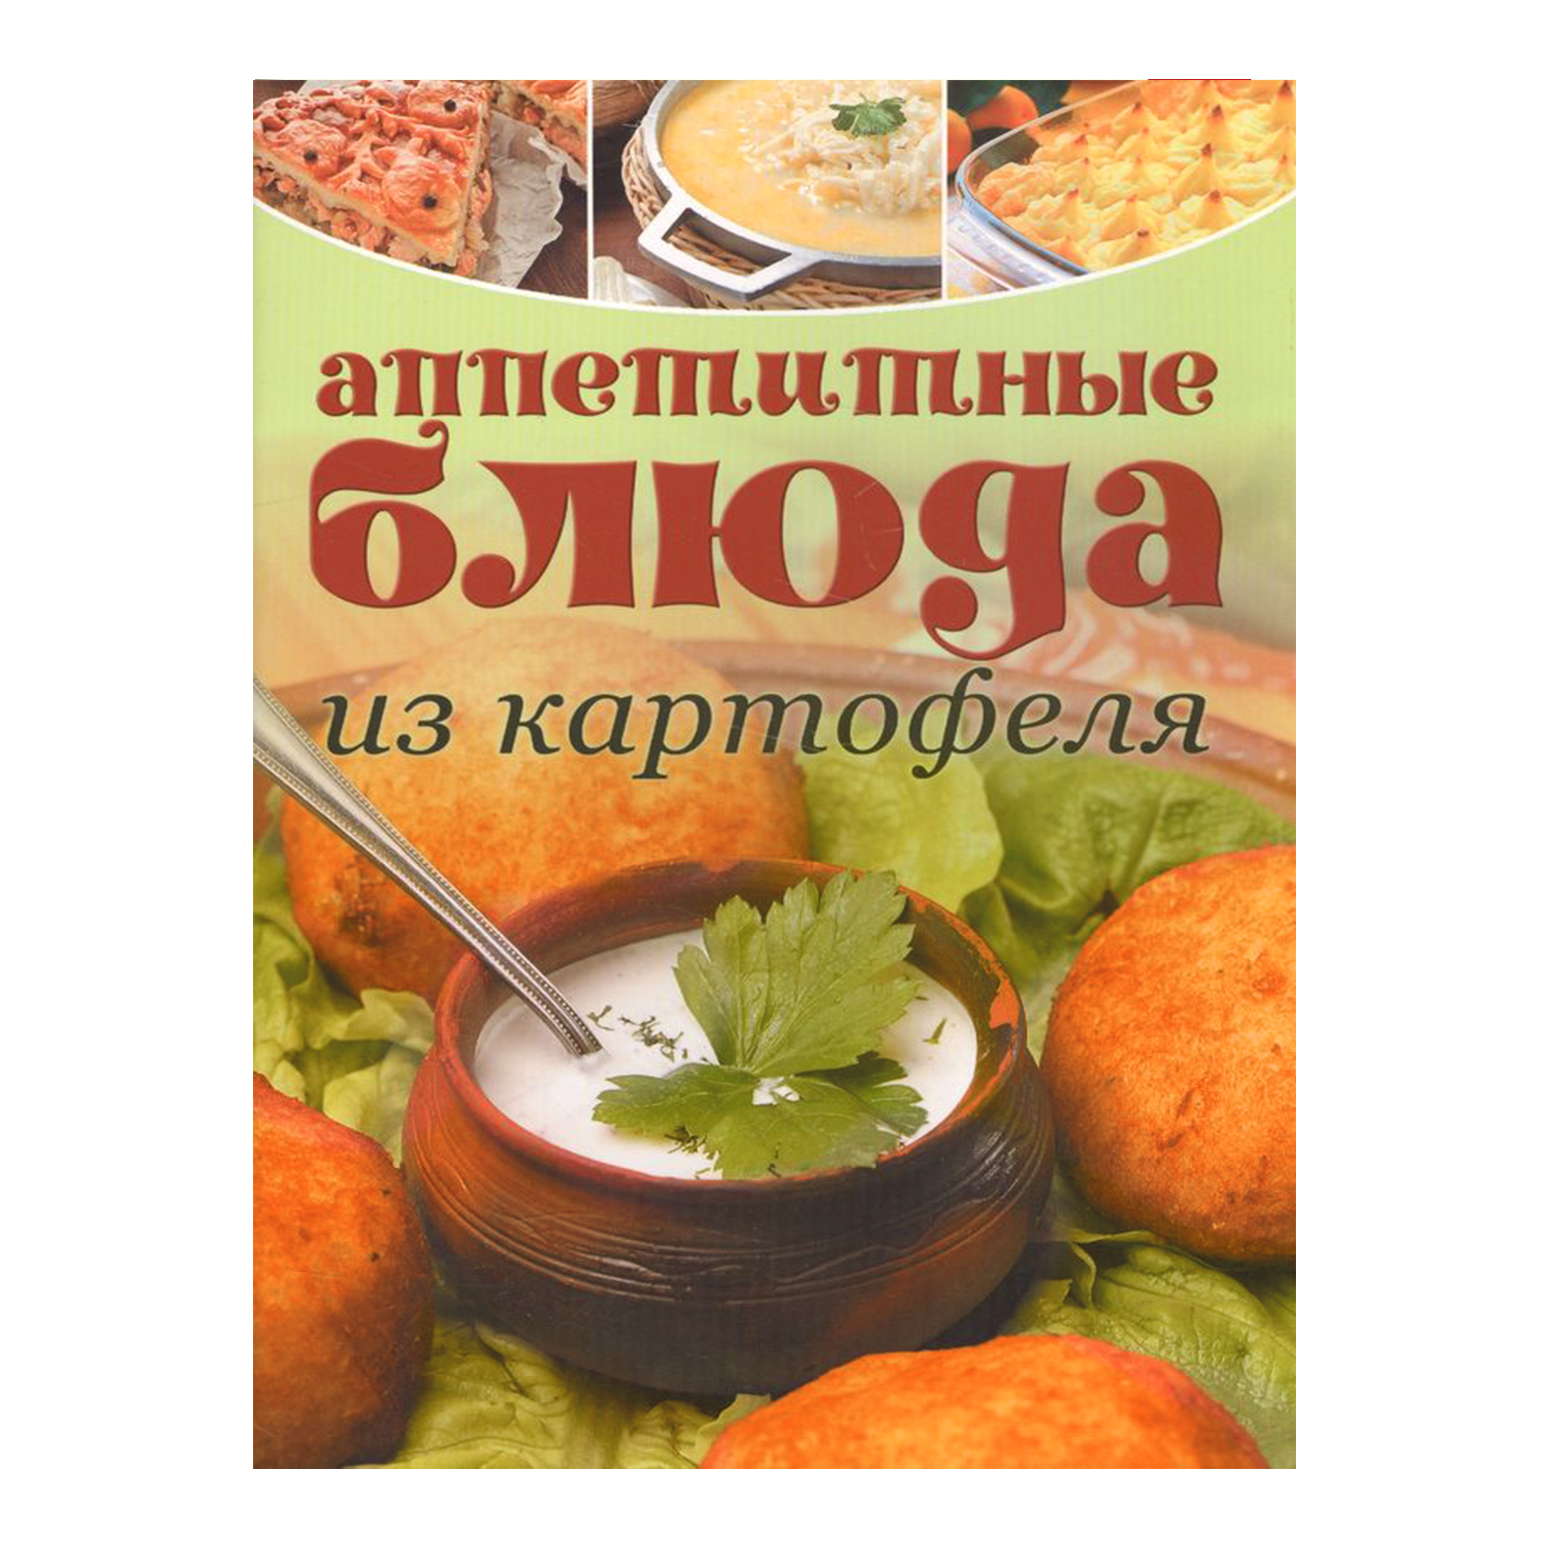 Аппетитные блюда из картофеля (книга представлена с разными обложками)